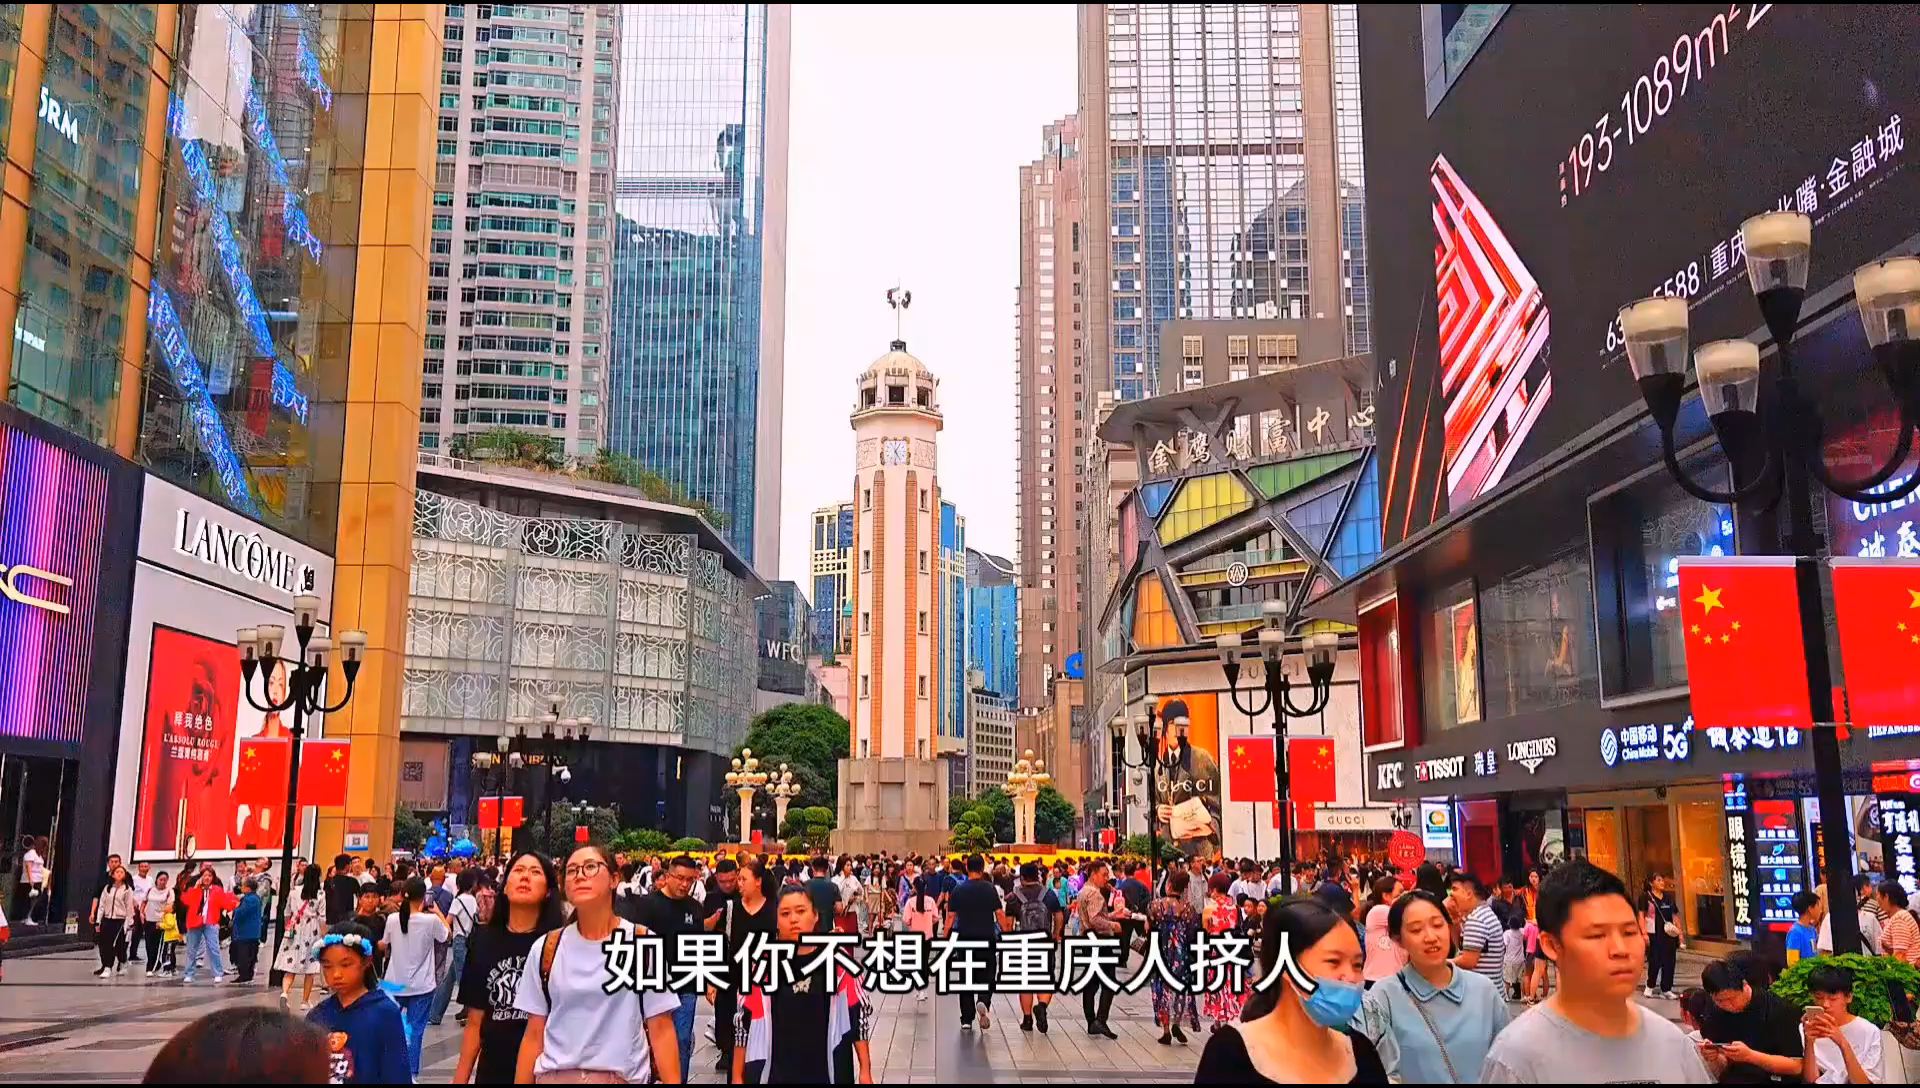 如果你不想在重庆人挤人，那么万州天生城是个不错的选择